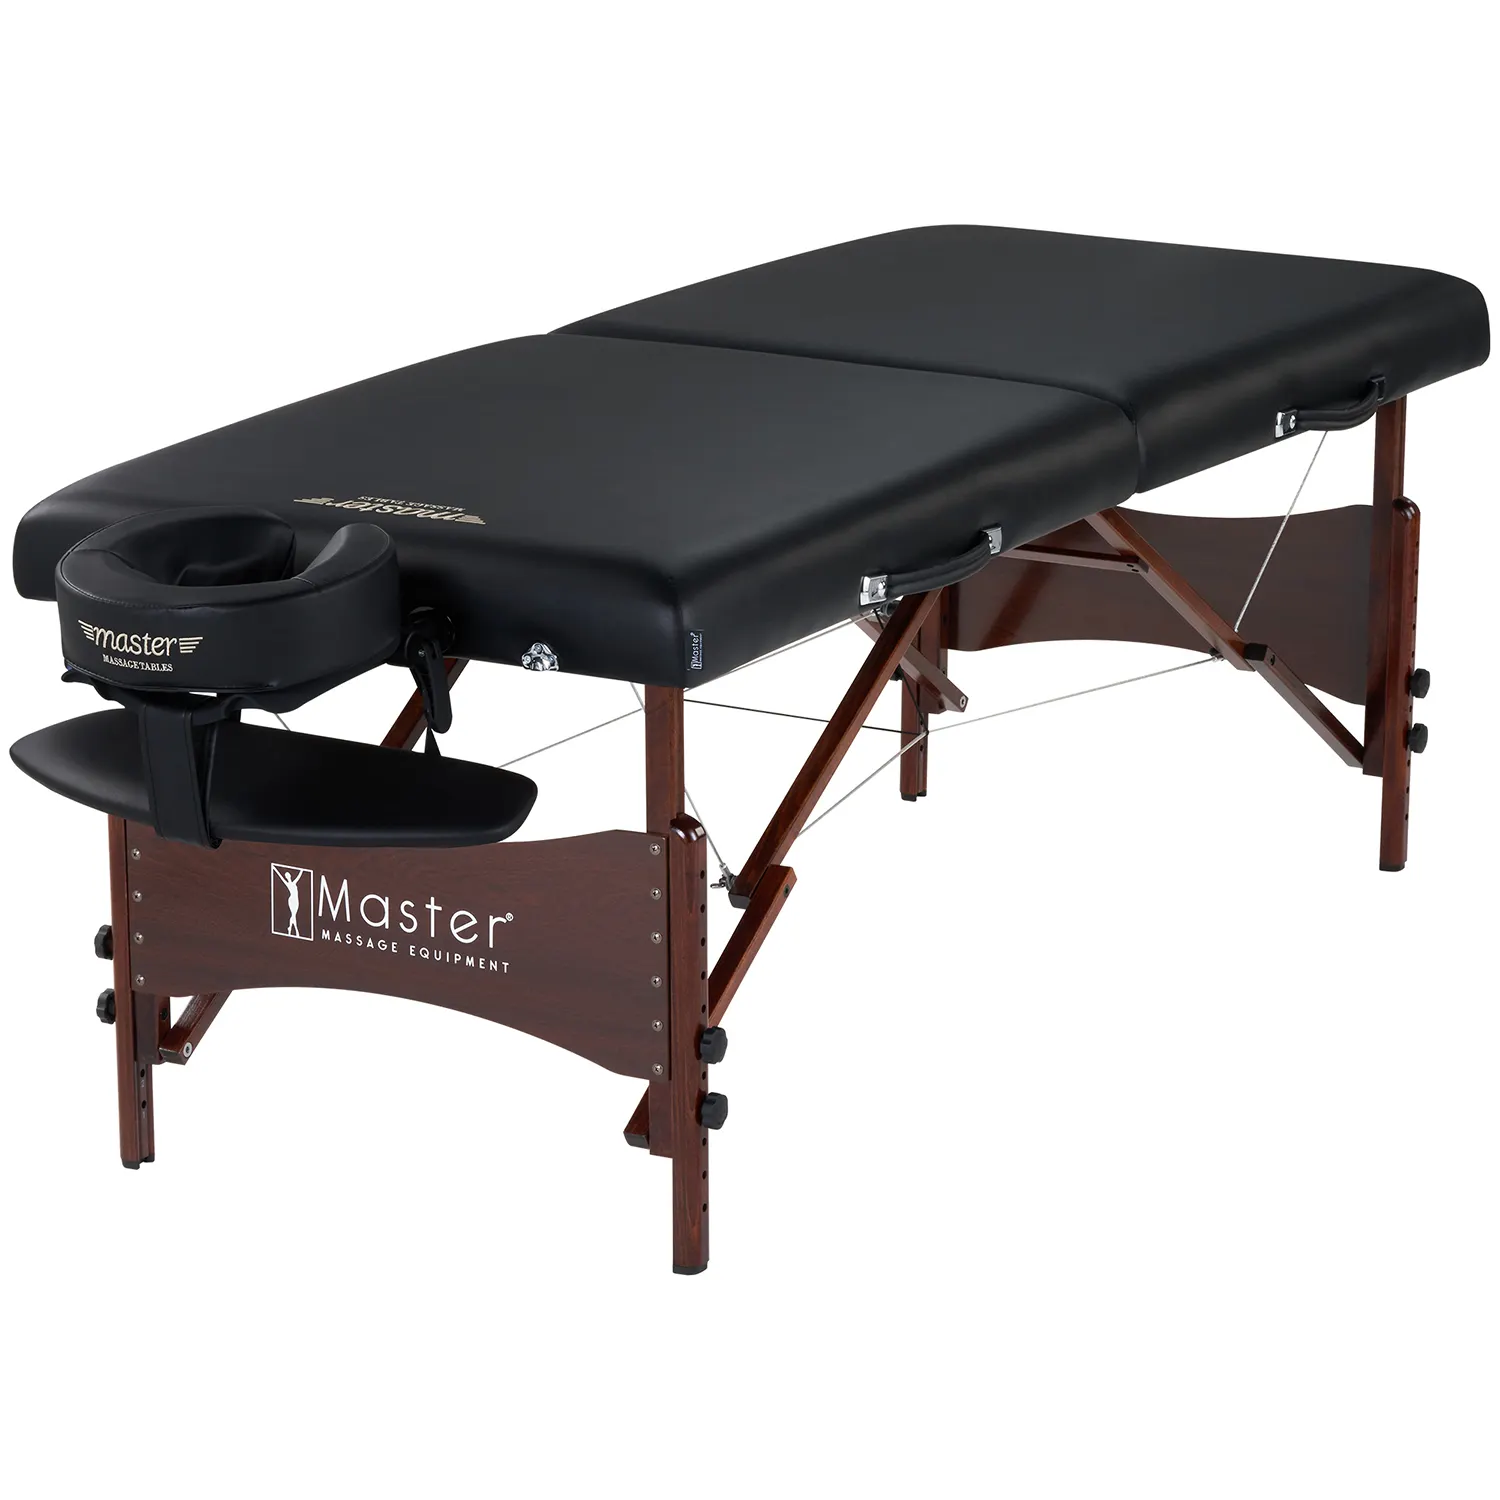 Ana masaj 28 "NewPort yeni tasarım hafif profesyonel katlanır ahşap taşınabilir masaj masası masaj koltuğu yüz yatak